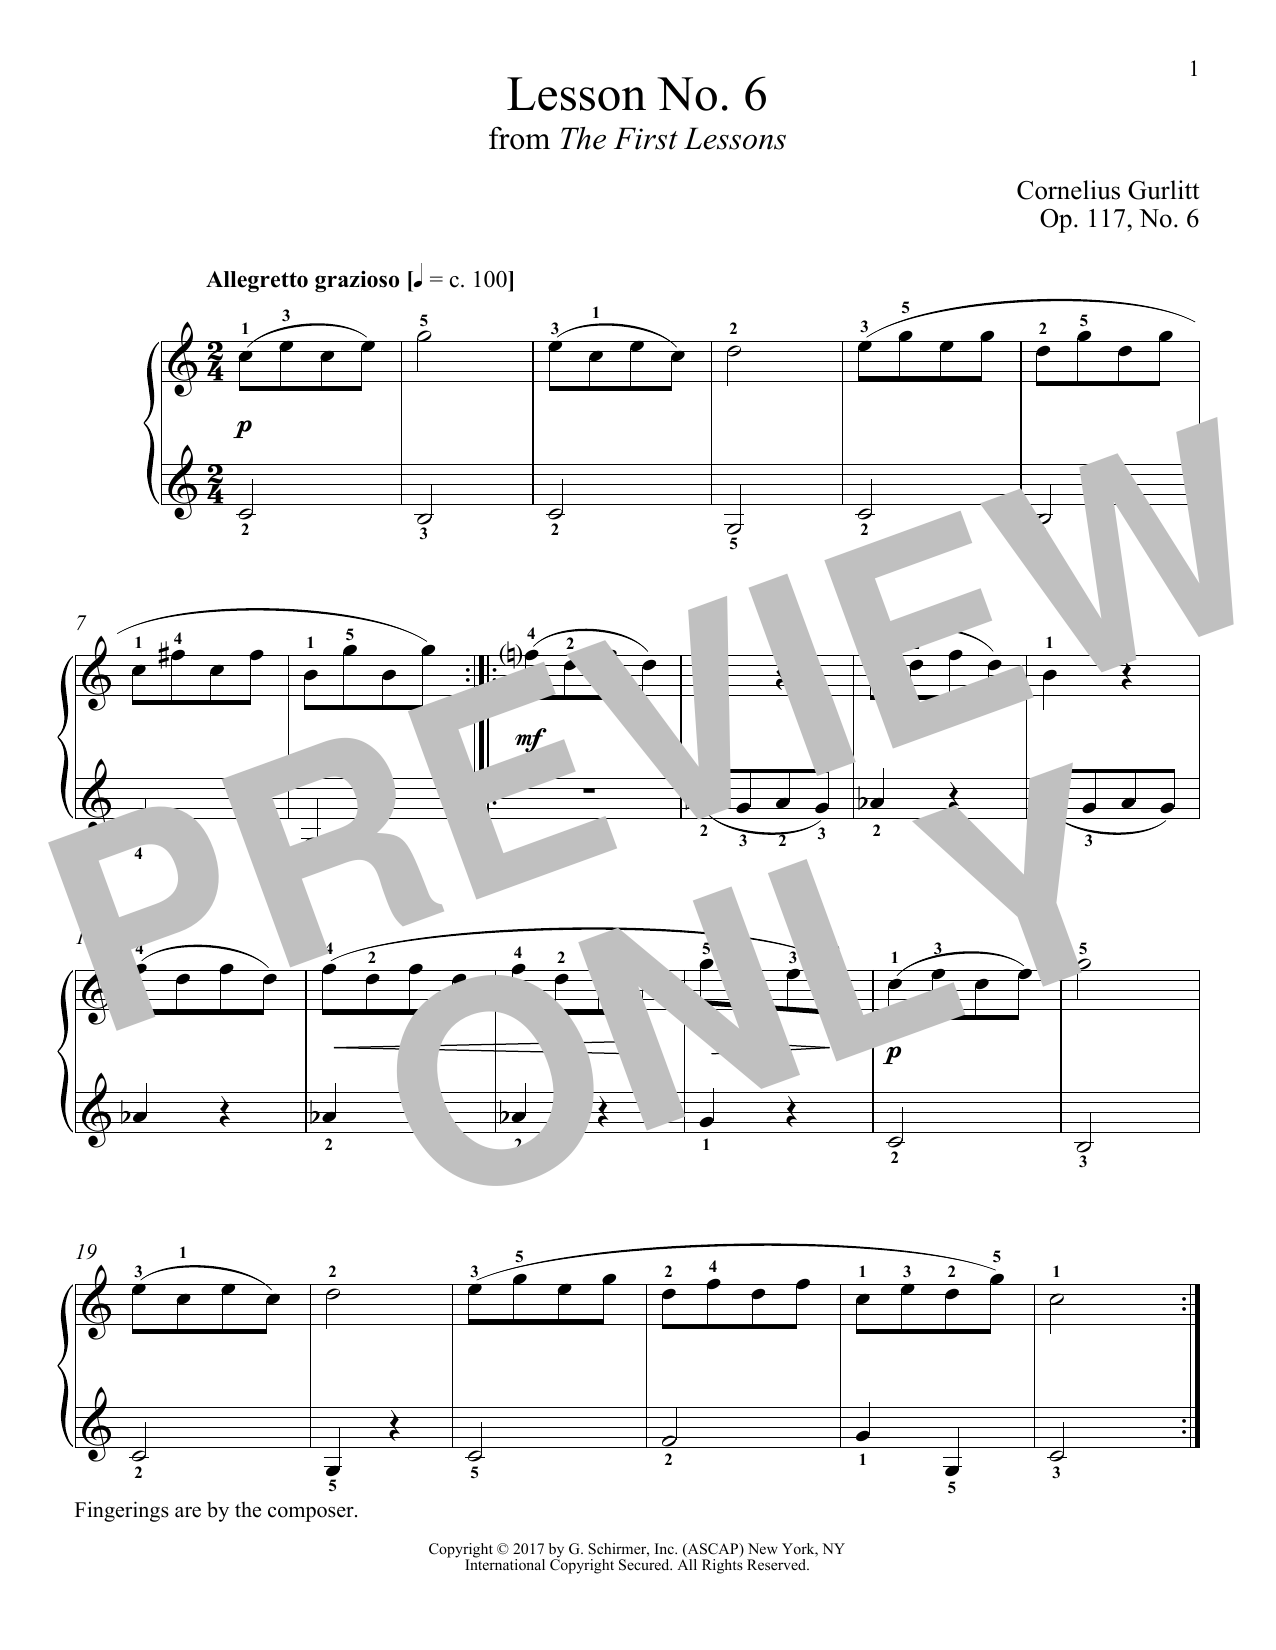 Cornelius Gurlitt Allegretto grazioso, Op. 117, No. 6 Sheet Music Notes & Chords for Piano - Download or Print PDF